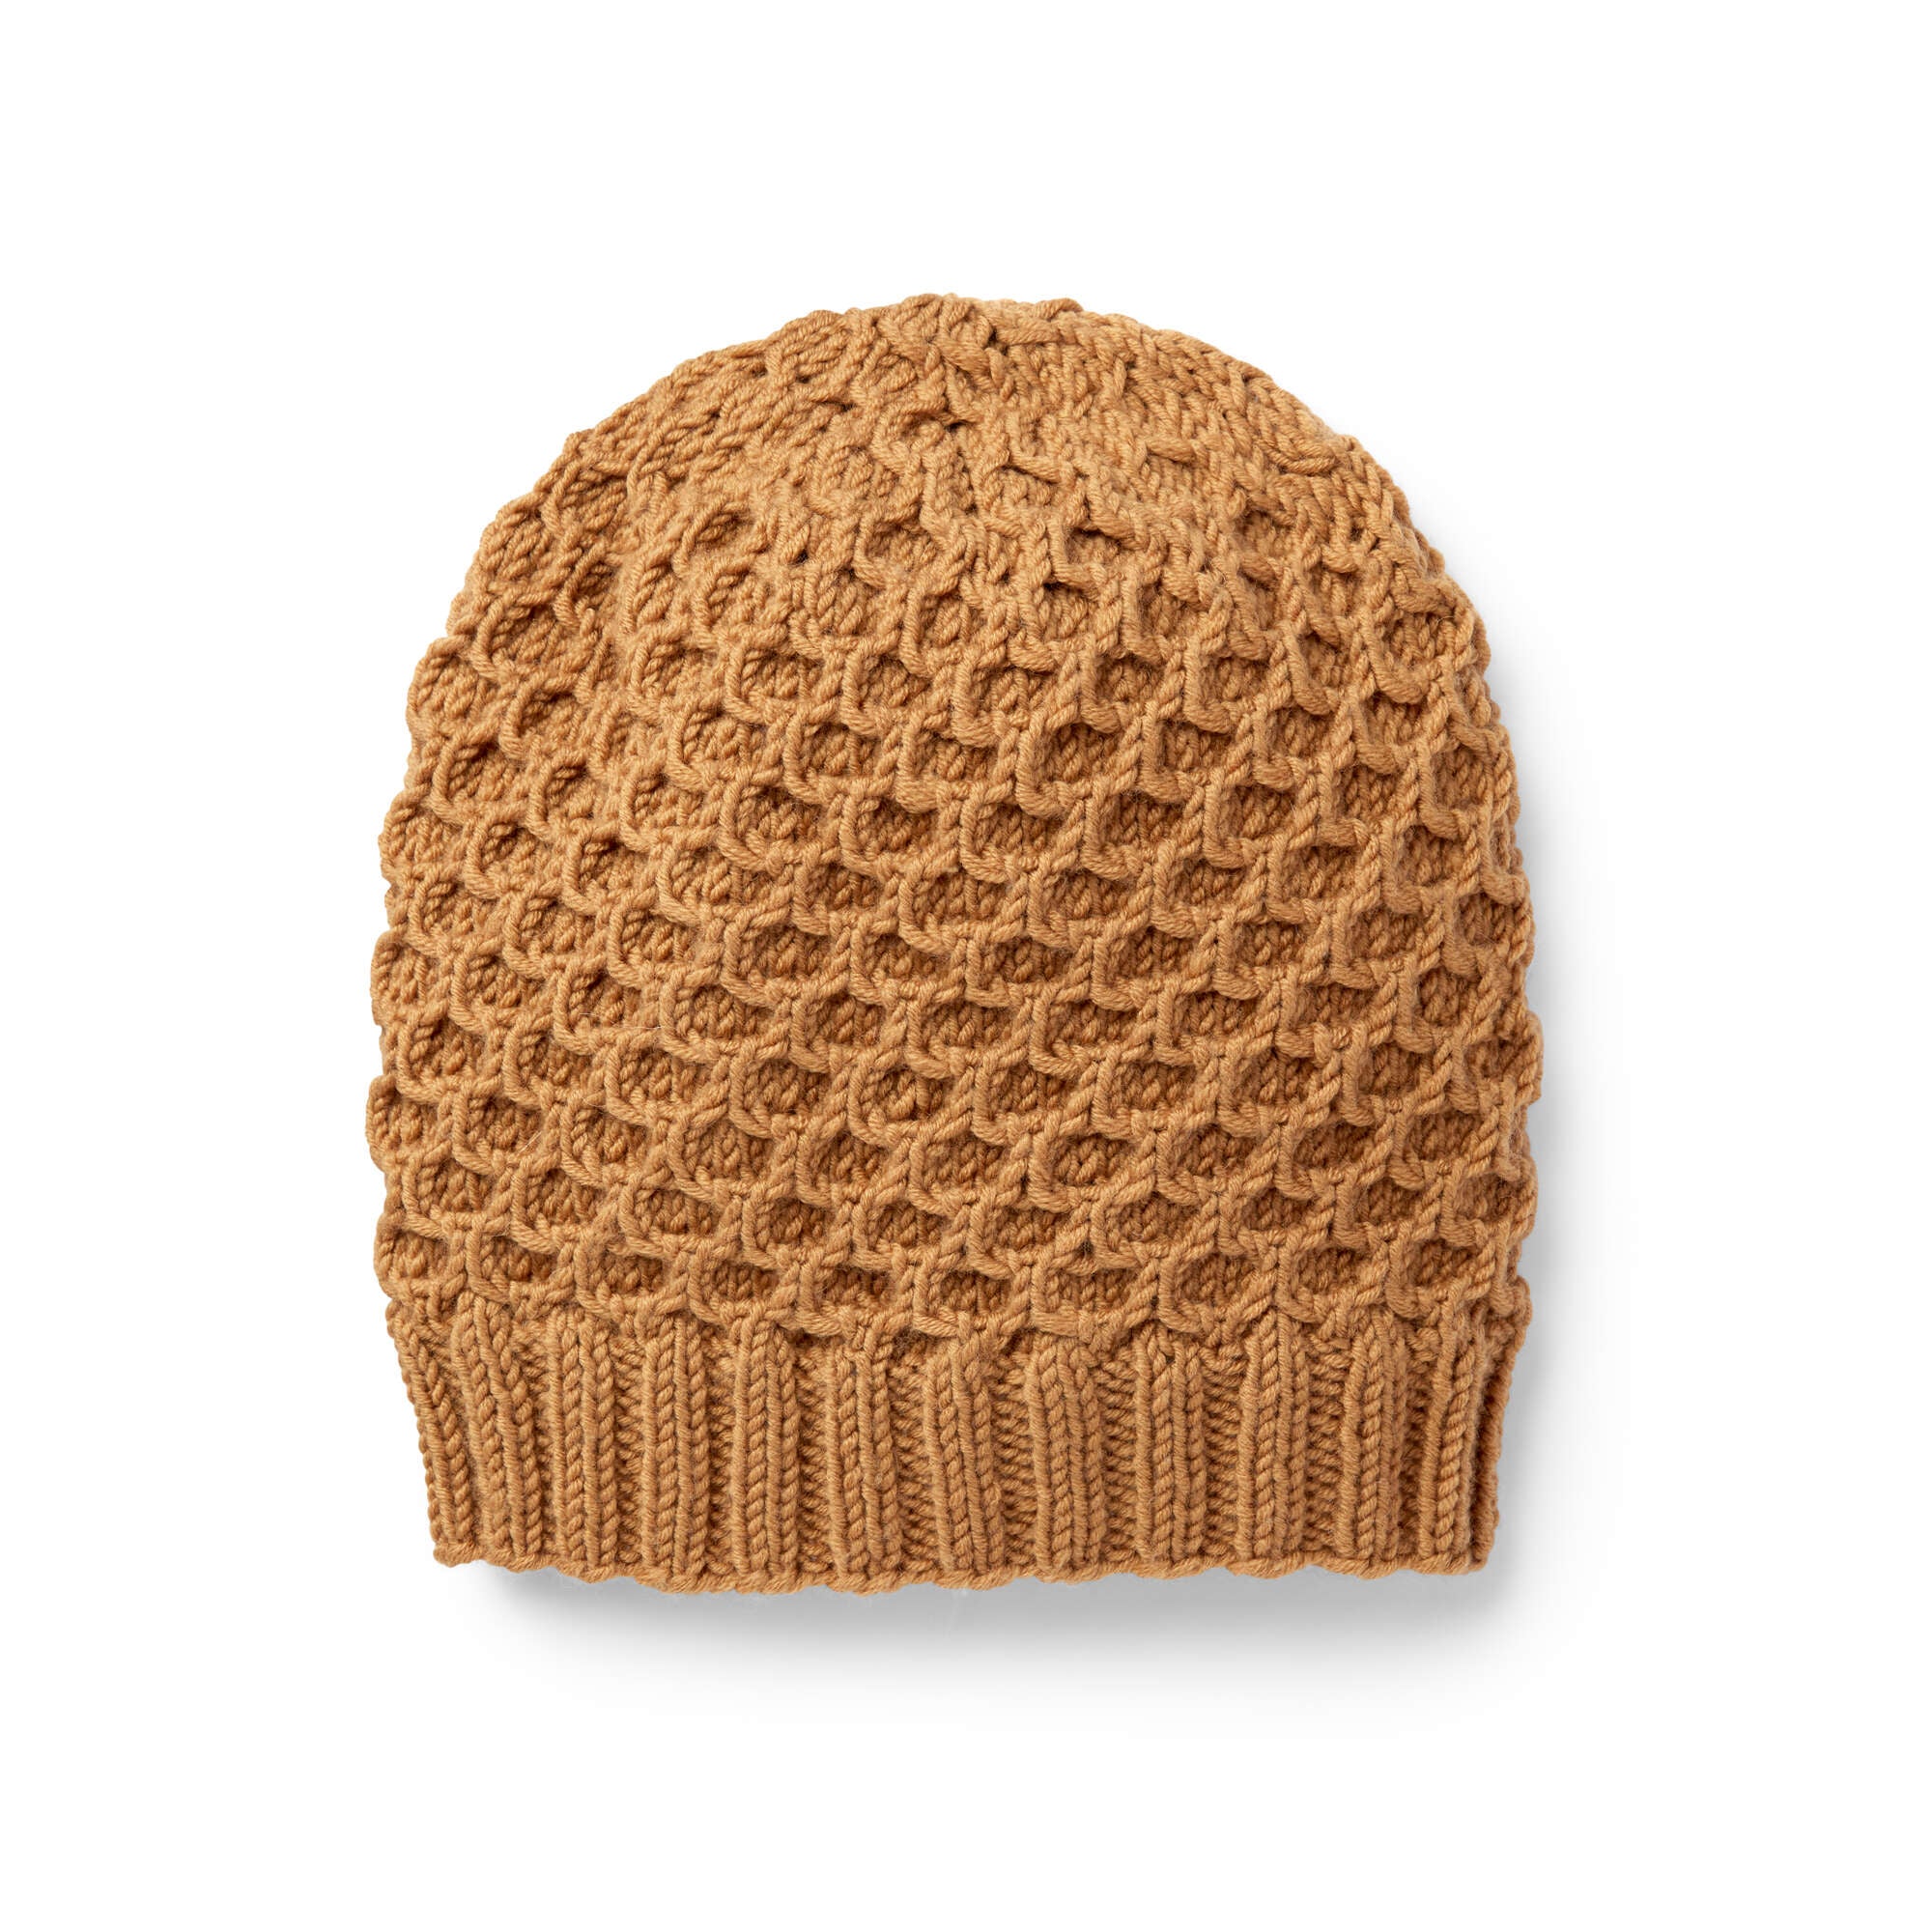 Free Sugar Bush Switch Back Knit Hat Pattern | Yarnspirations